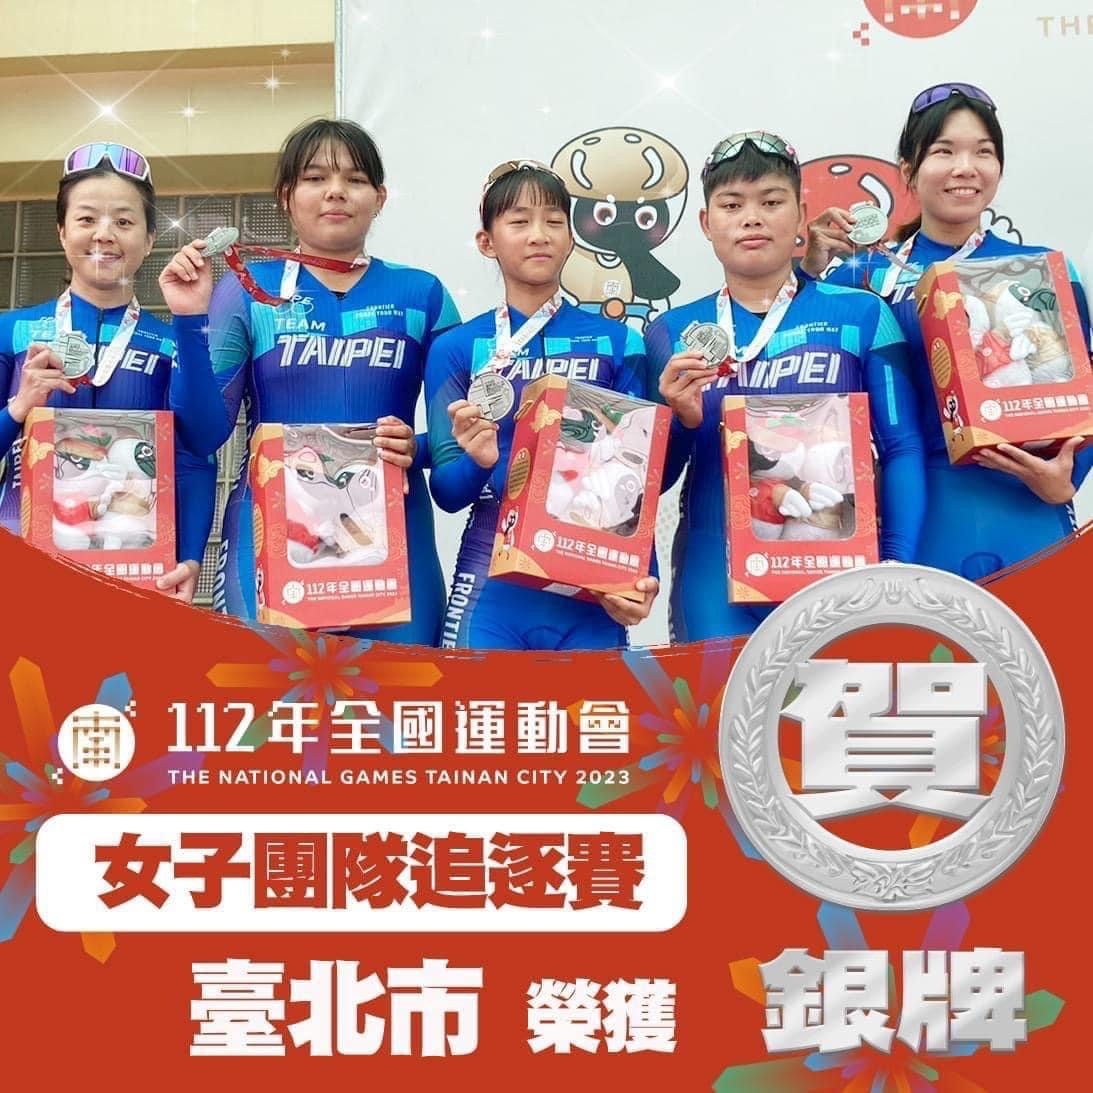 女子組團隊追逐賽銀牌 西松高中自由車隊